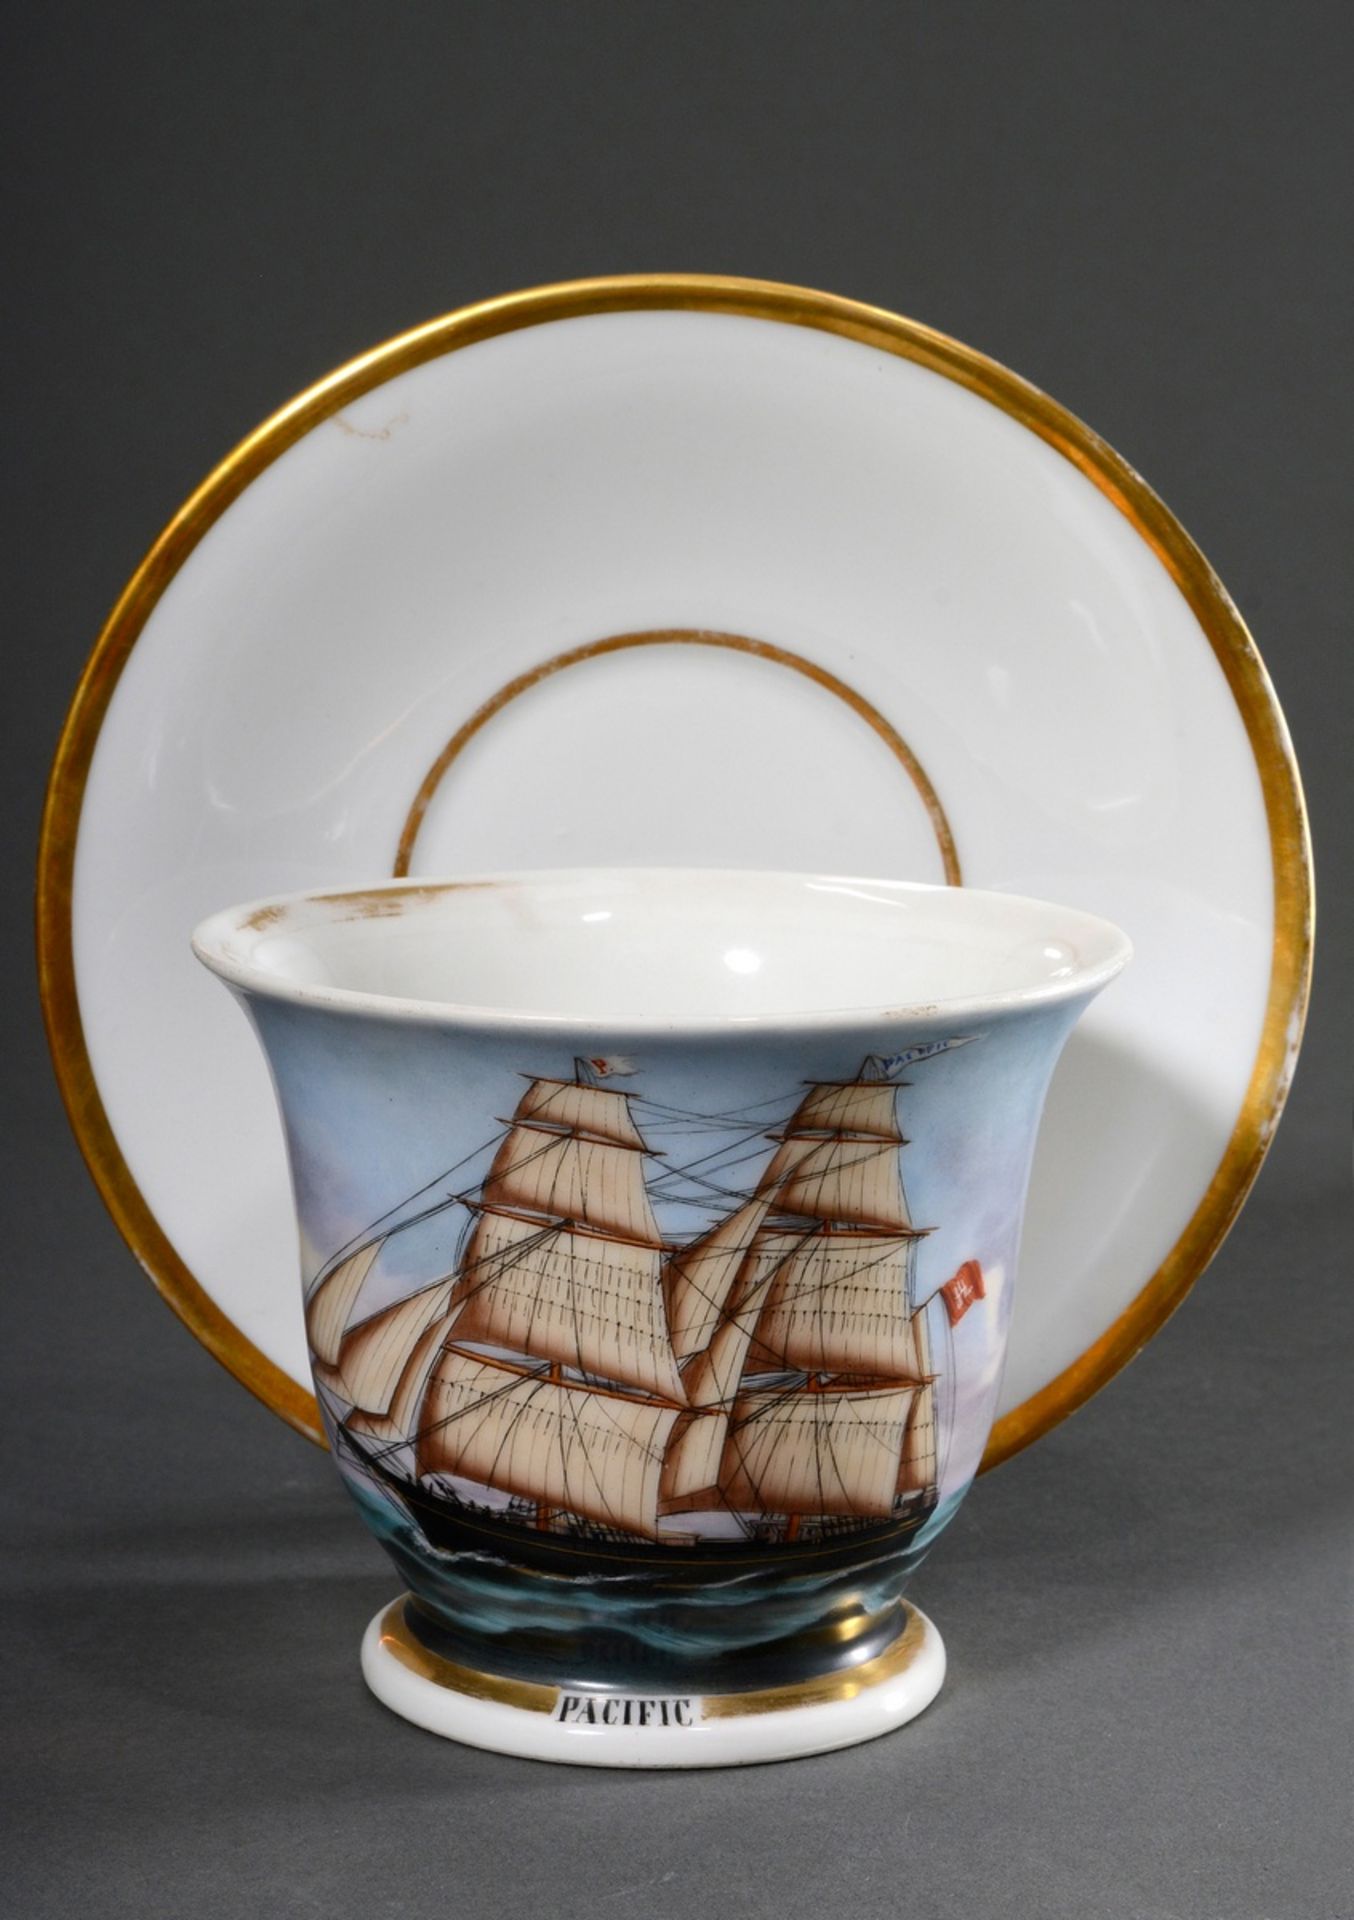 Captain's cup/UT: Brigg "Pacific", built by Schau & Oltmanns/Geestemünde 1860, captains: T. Fedders